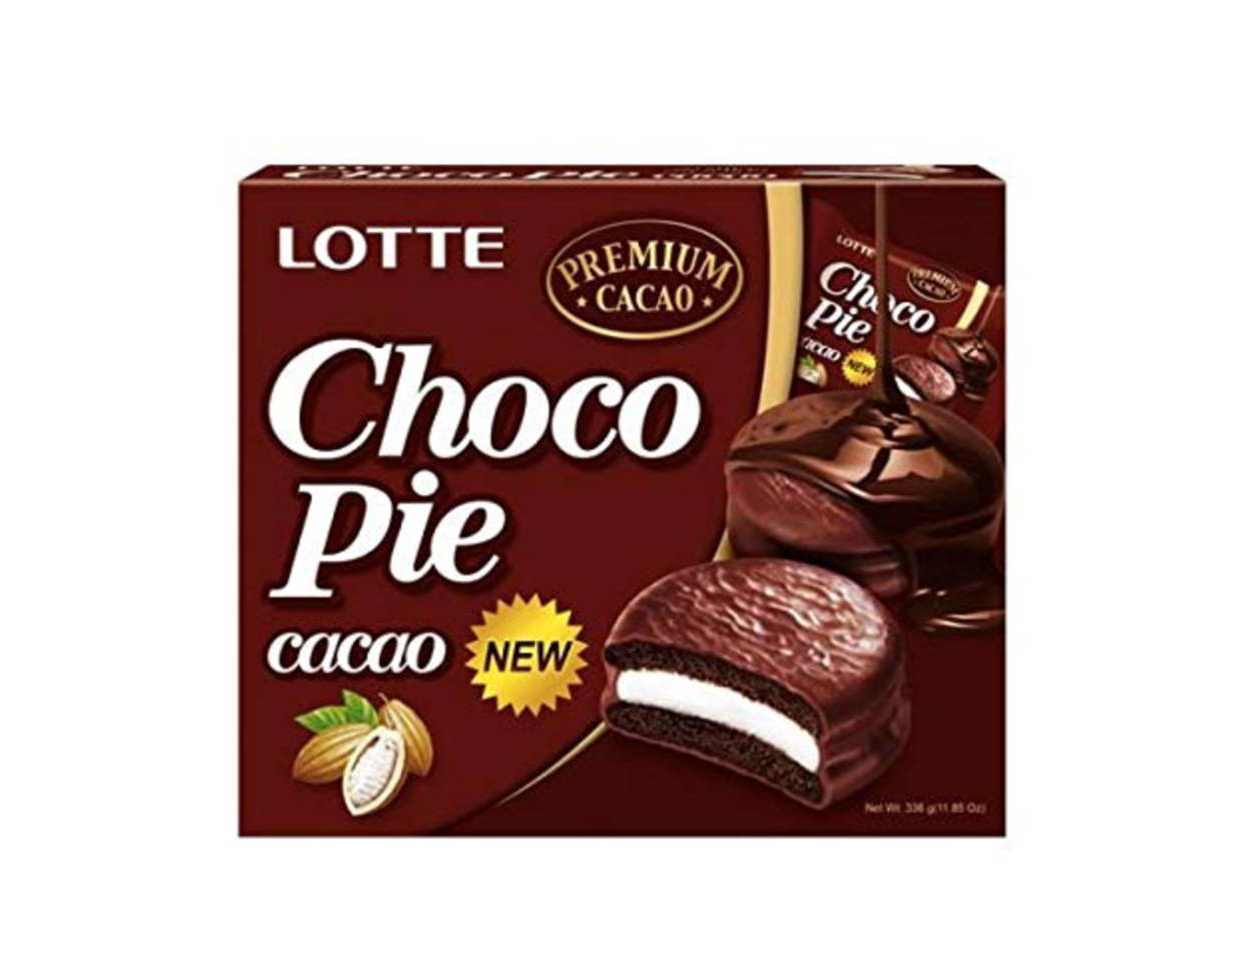 Lotte Choco Pie Cacao koláčky 336g (12x28g)